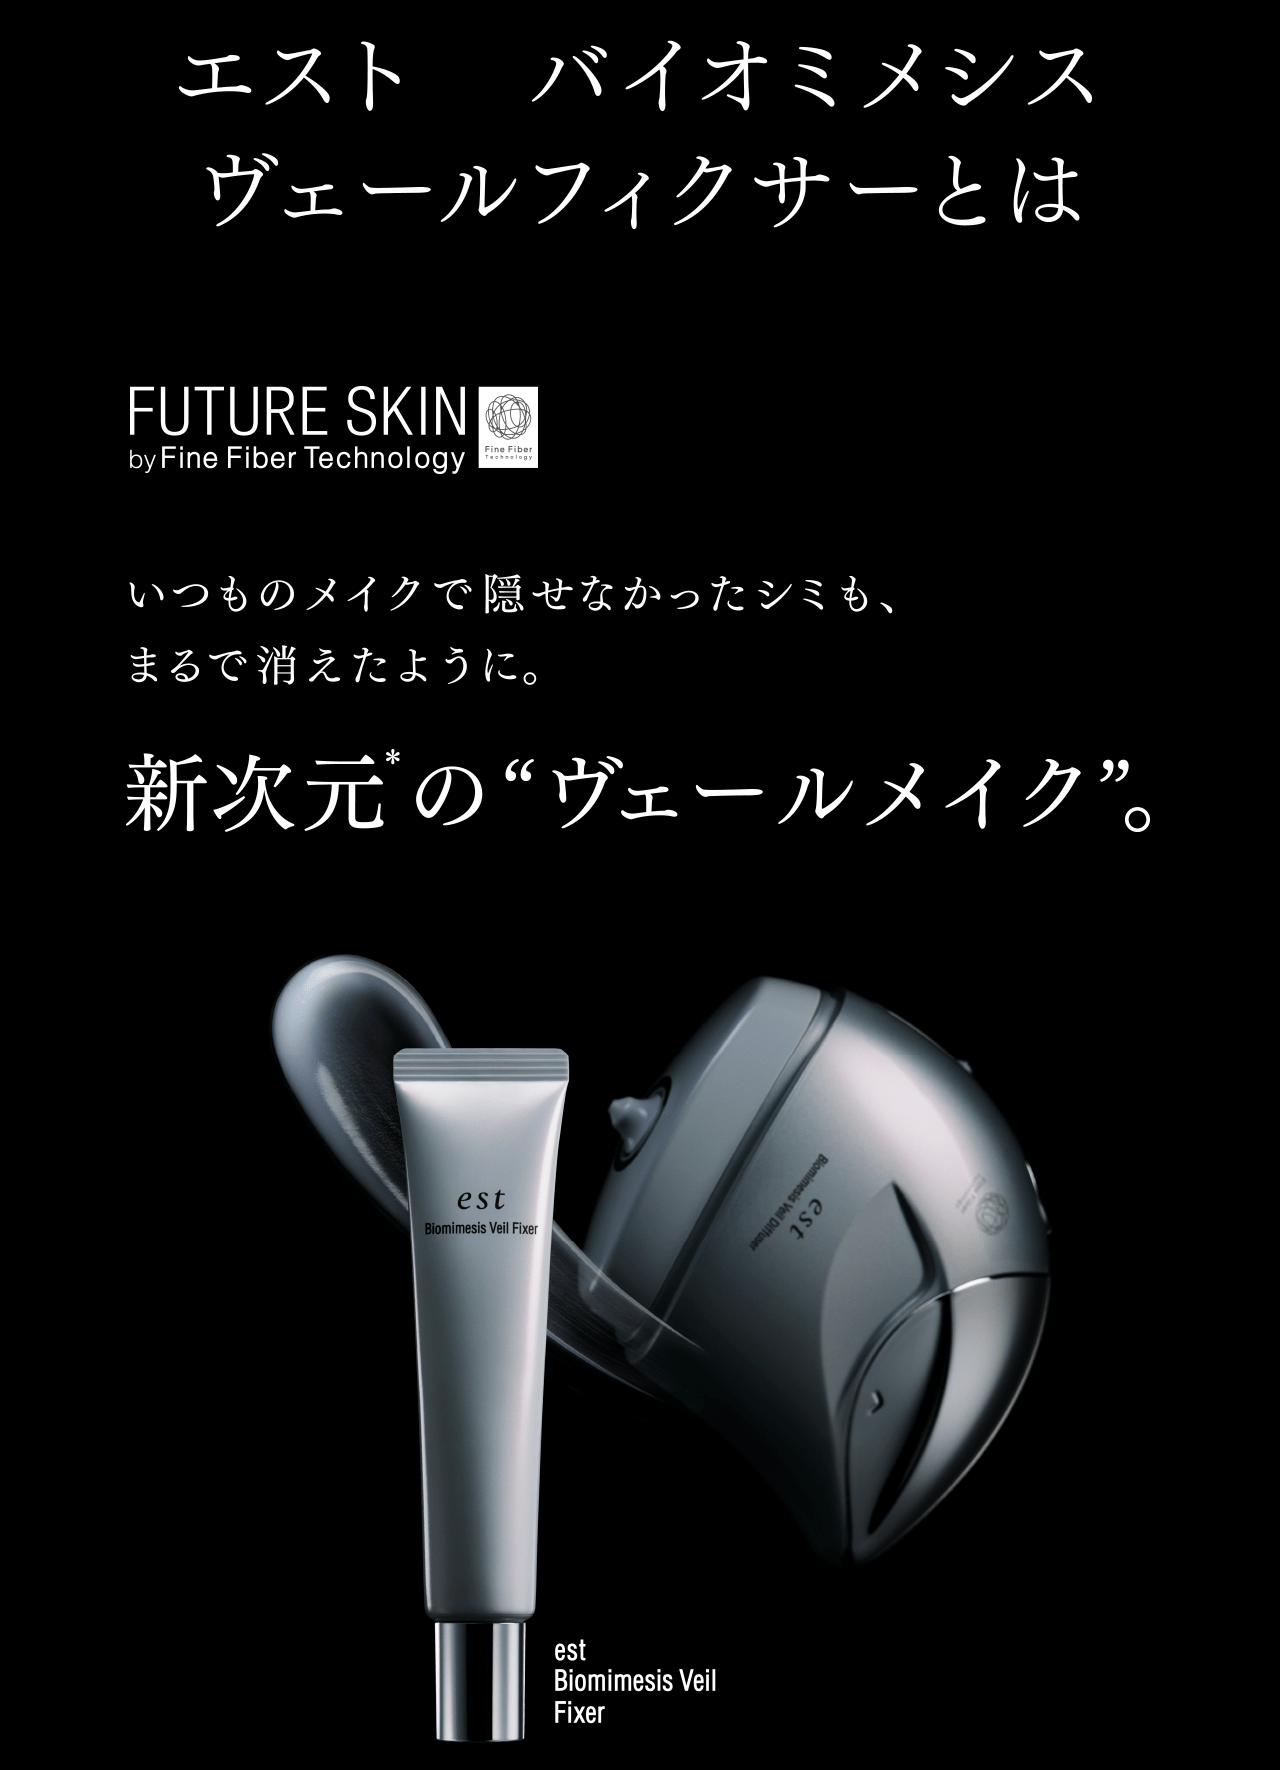 花王株式会社 | FUTURE SKIN by Fine Fiber Technology | エスト